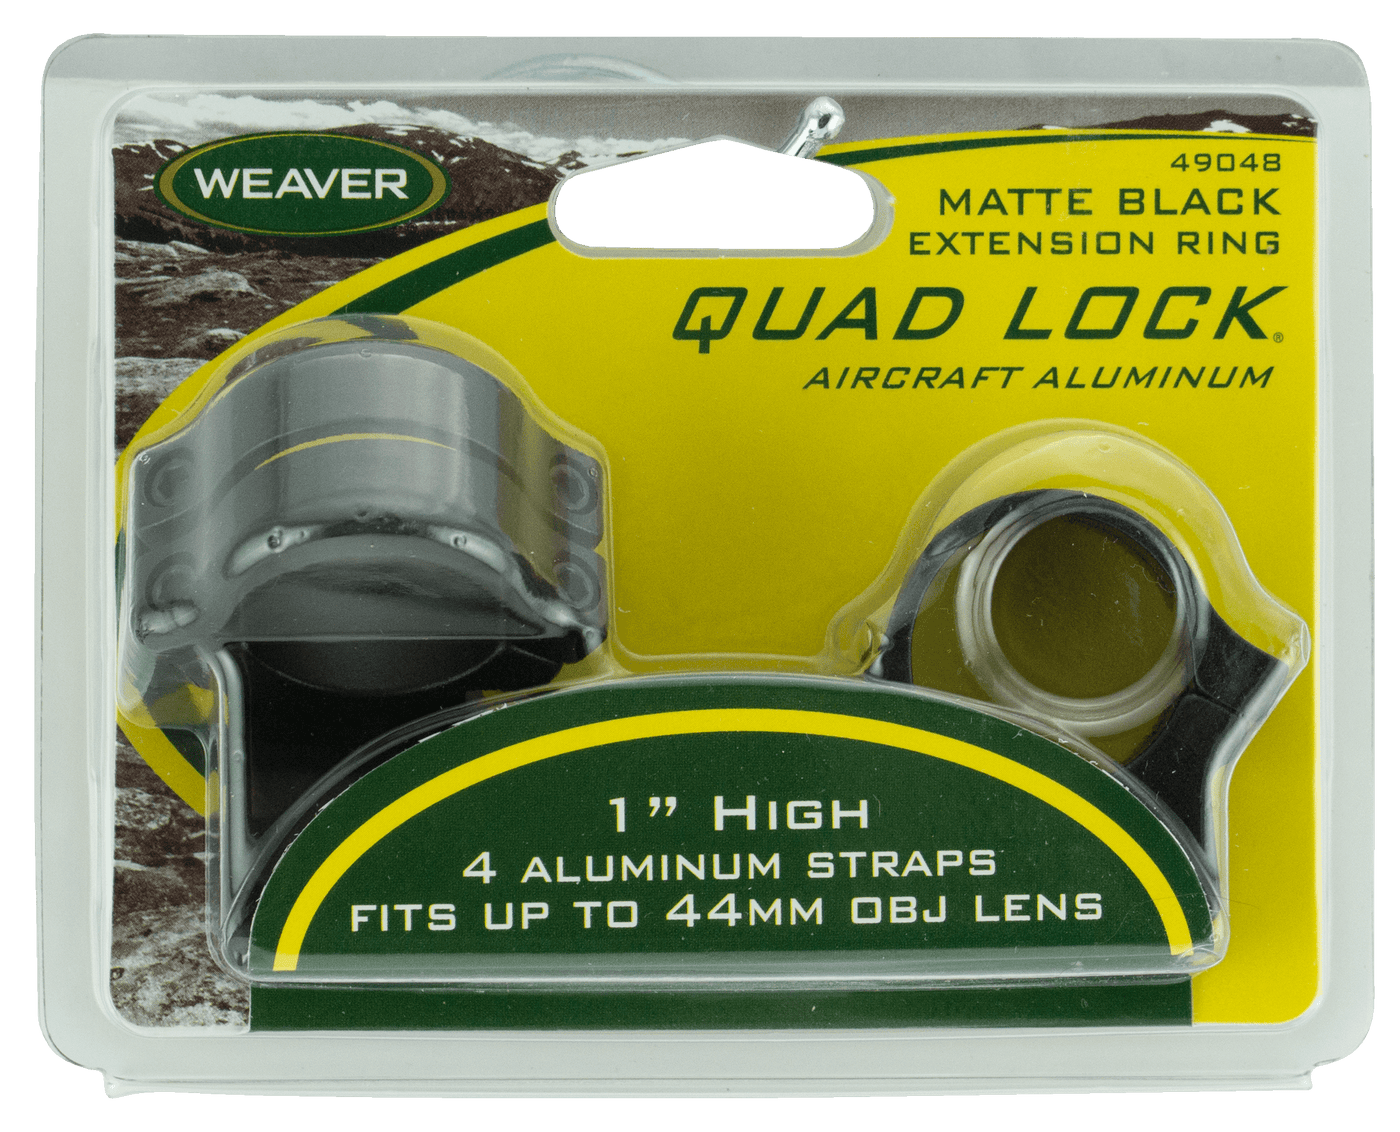 Weaver Mounts Weaver Rings Detachable Quad- - Lock 1" High Extension Matte Optics Accessories